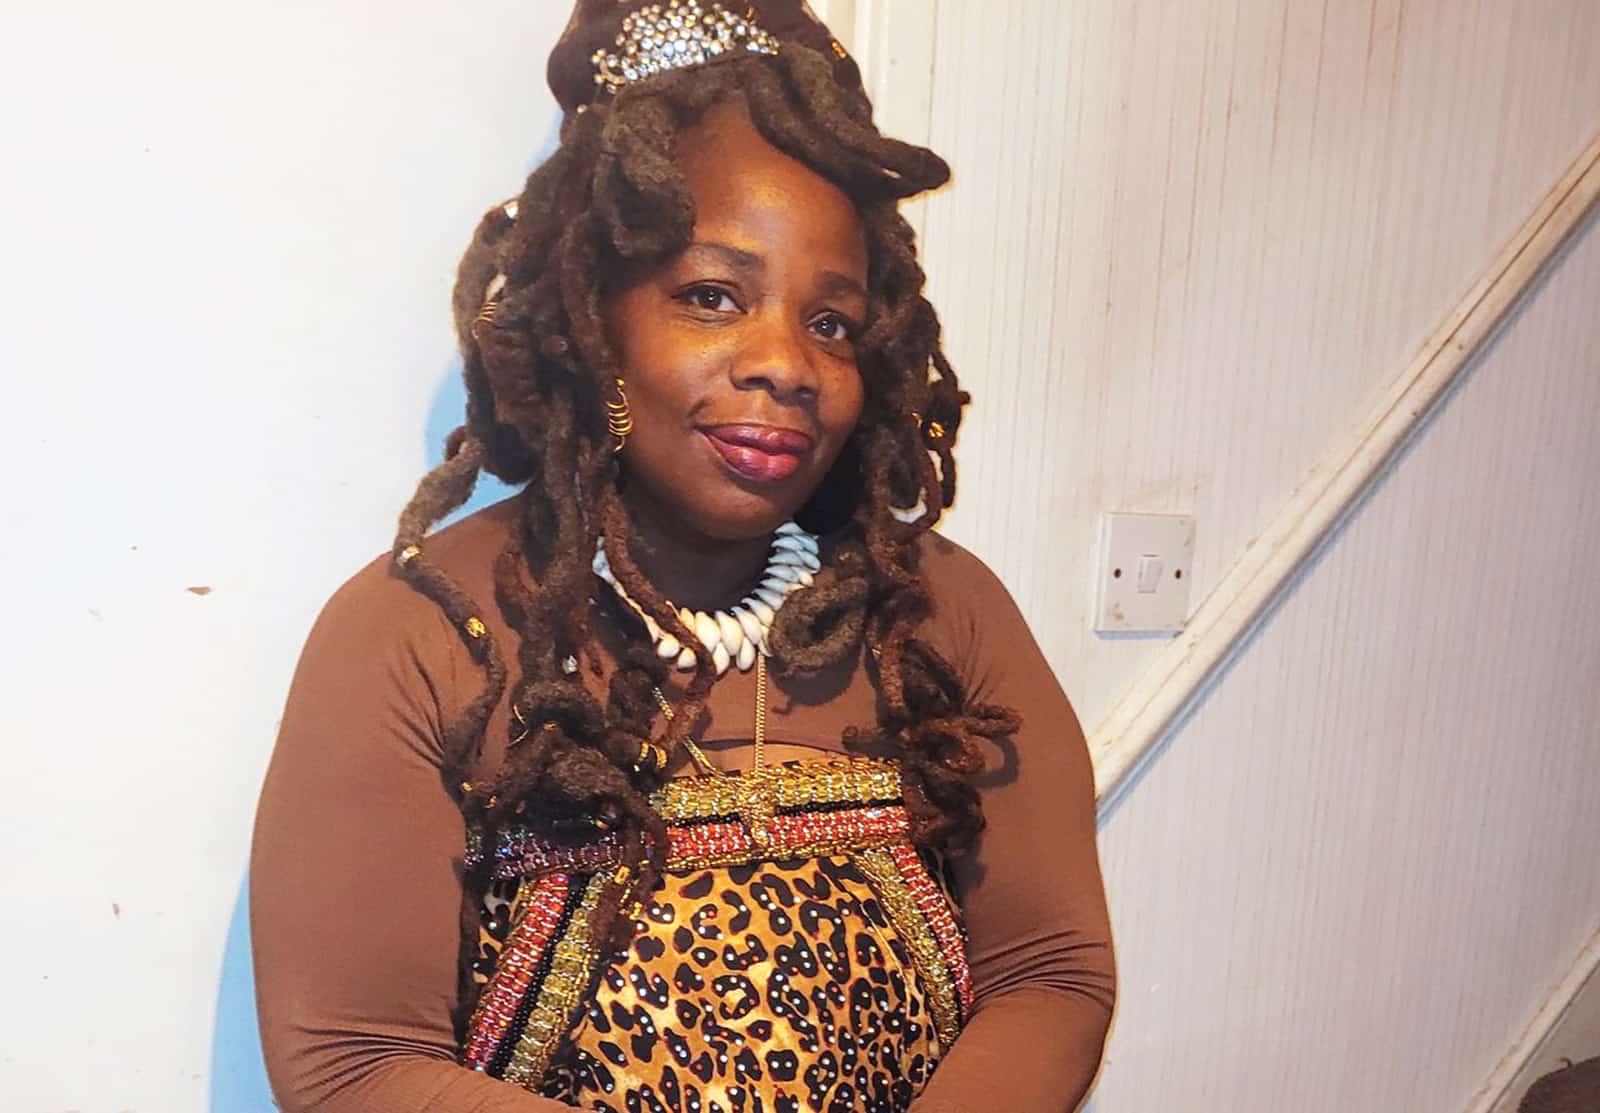 Ngozi Fulani says she’s had ‘horrific’ online abuse after Palace remarks